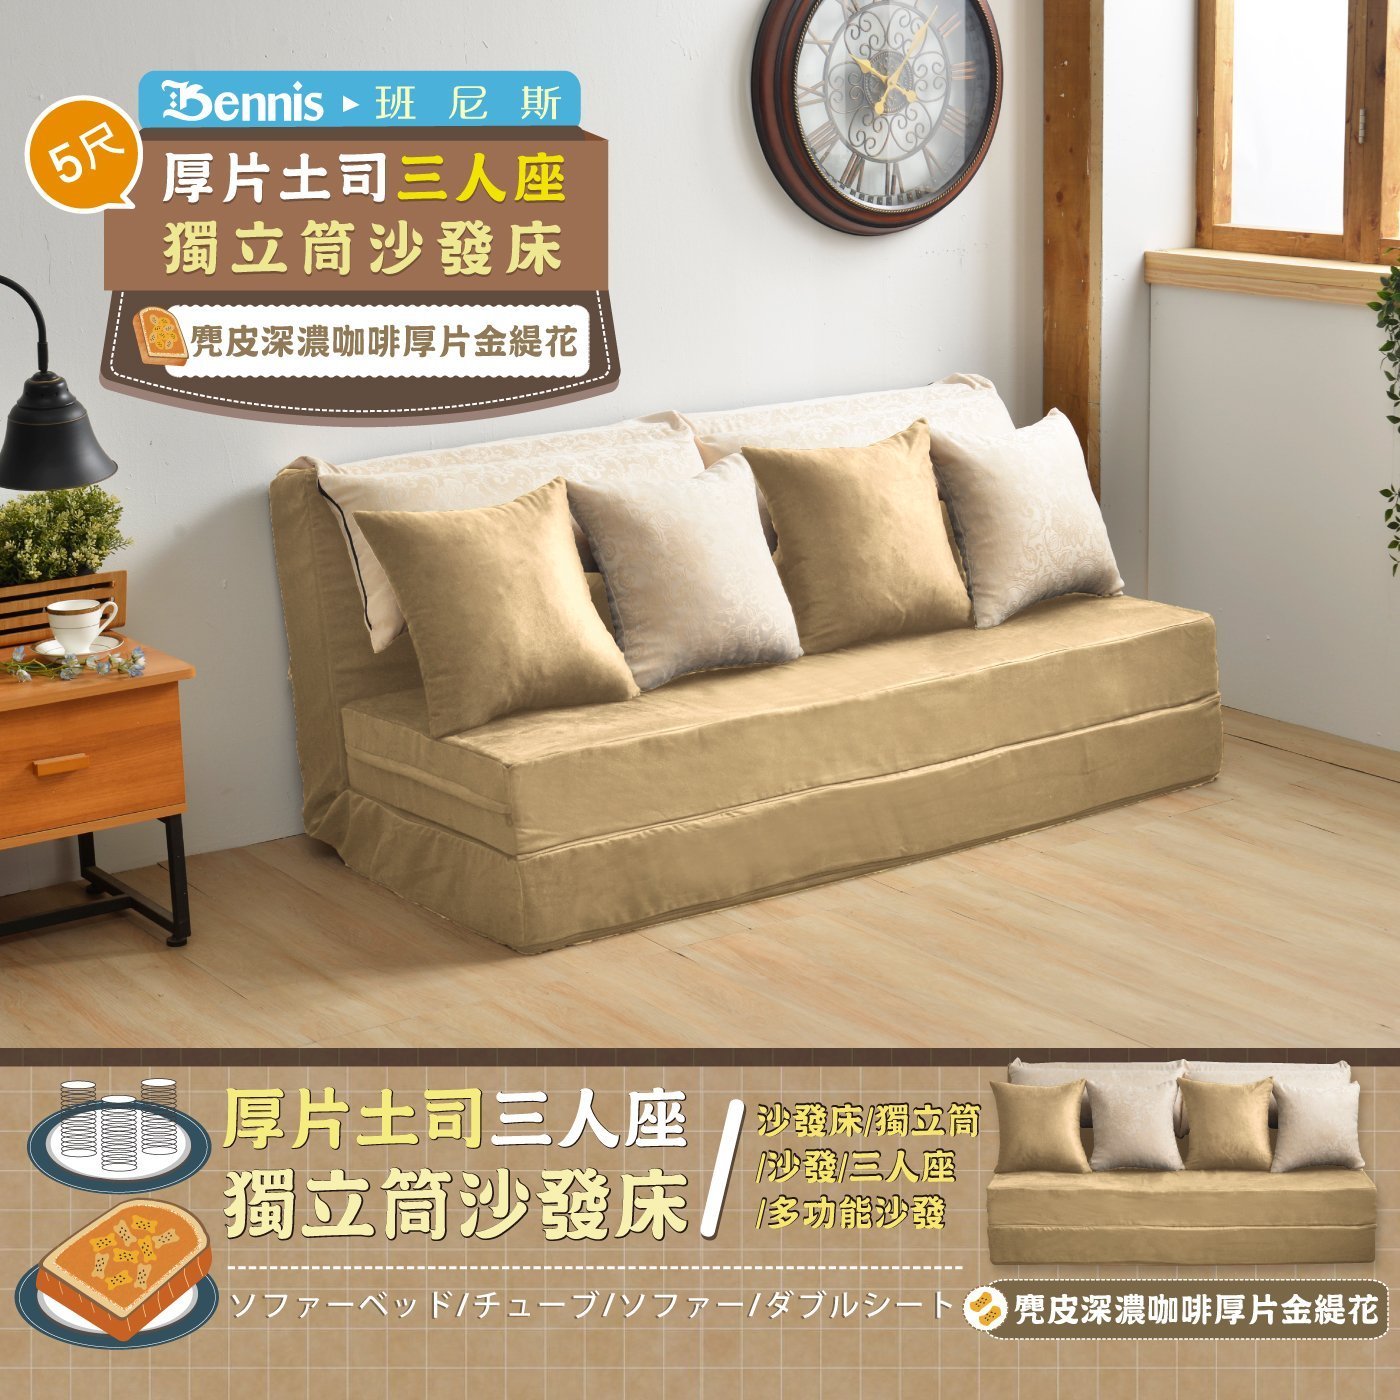 重量級厚片土司沙發床設計師5尺雙人獨立筒床墊/班尼斯國際名床 0